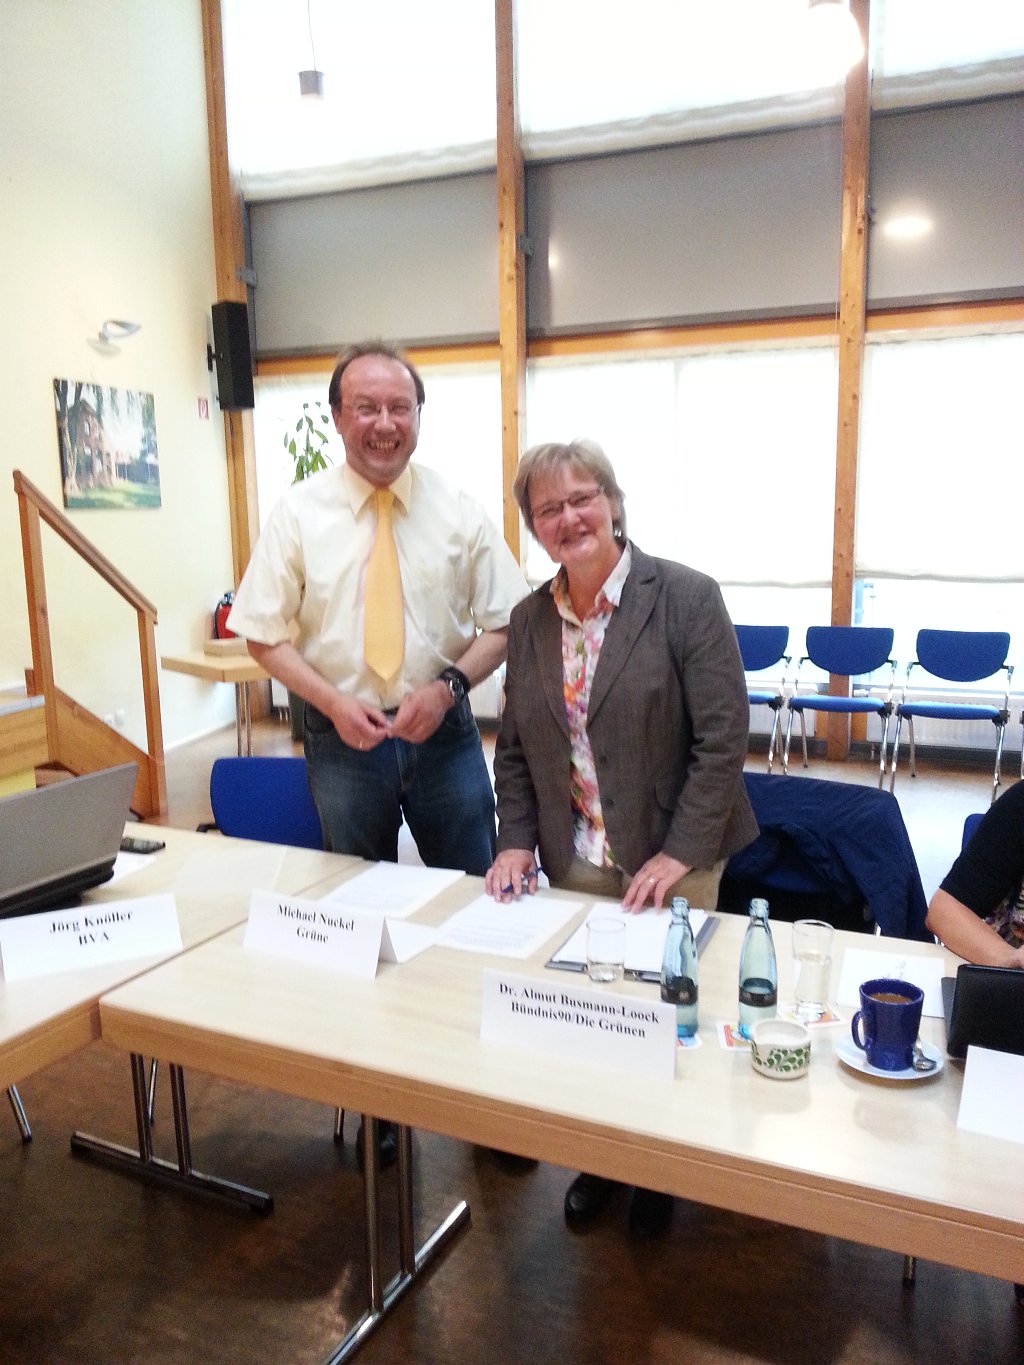 BGM Peter Kroll vereidigt die neue Gemeindevertreterin Frau Dr. Almut Busmann-Loock